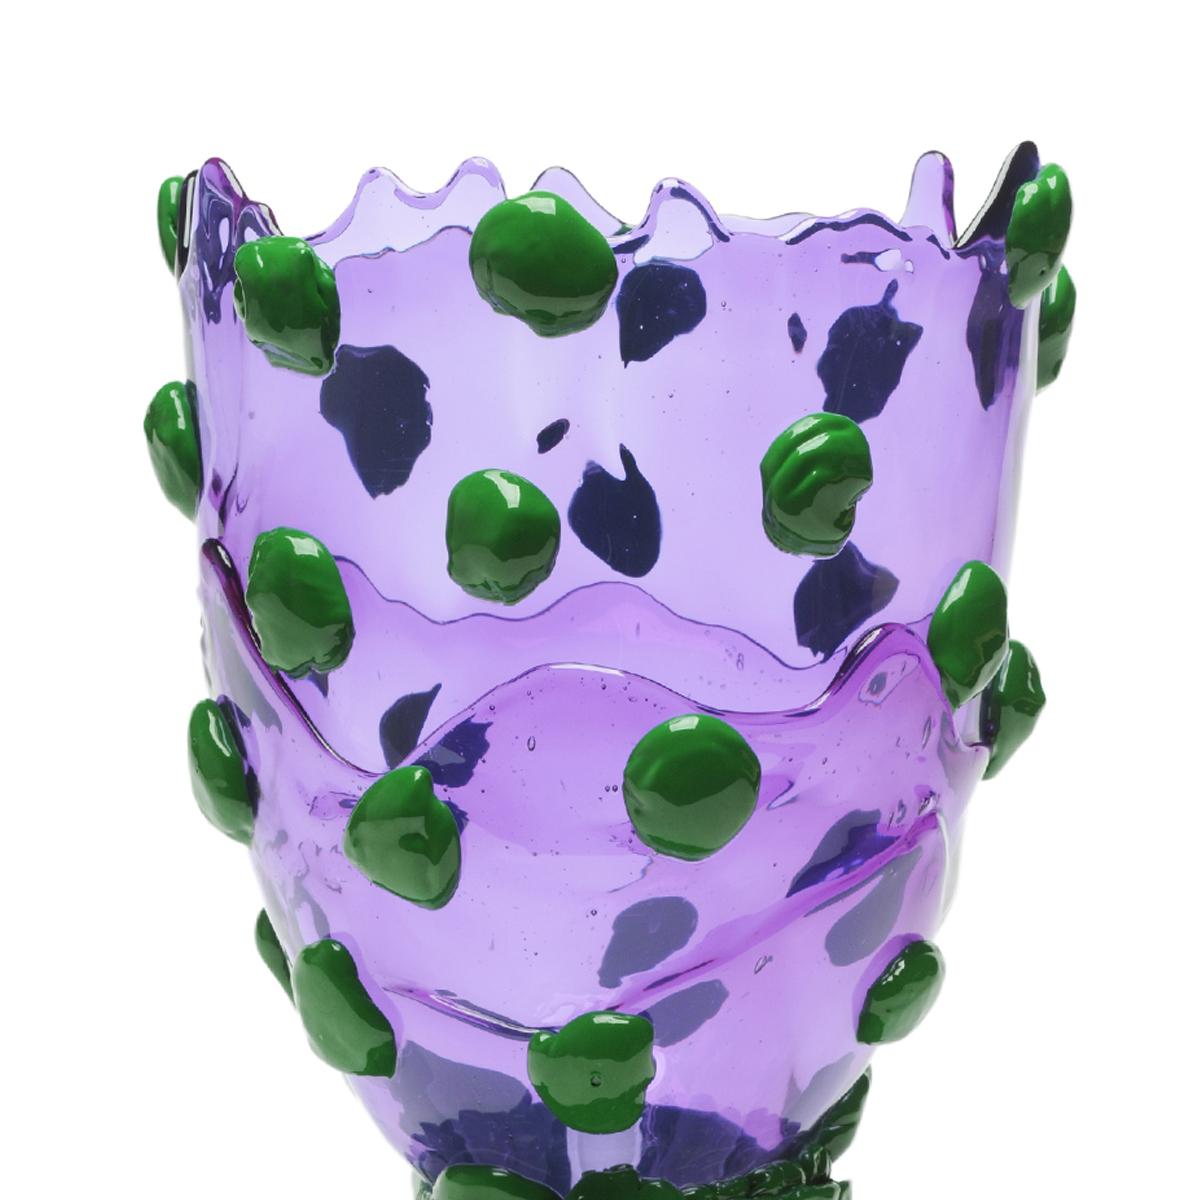 Nugget-Vase, klar lila, matt grün.
Vase aus weichem Harz, entworfen von Gaetano Pesce im Jahr 1995 für die Collection'S Fish Design.

Maße: L - Ø 22cm x H 36cm
Farben: klar lila, matt grün.
Andere Größen verfügbar.
Vase aus weichem Harz, entworfen